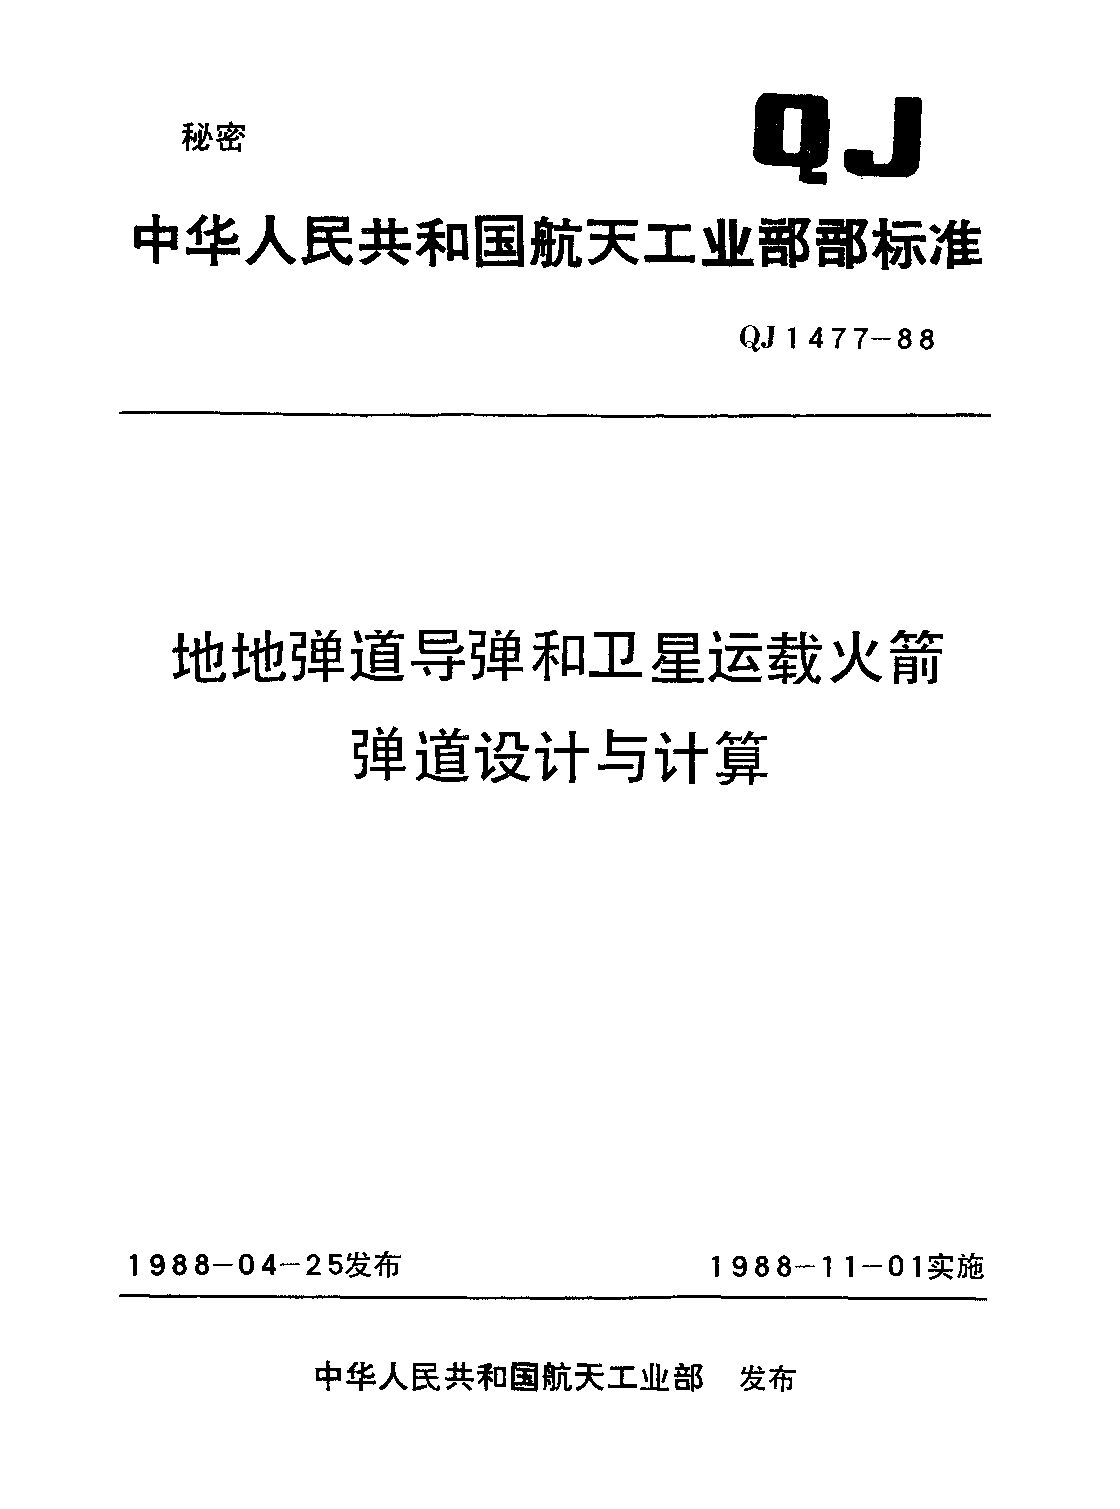 QJ 1477-1988封面图